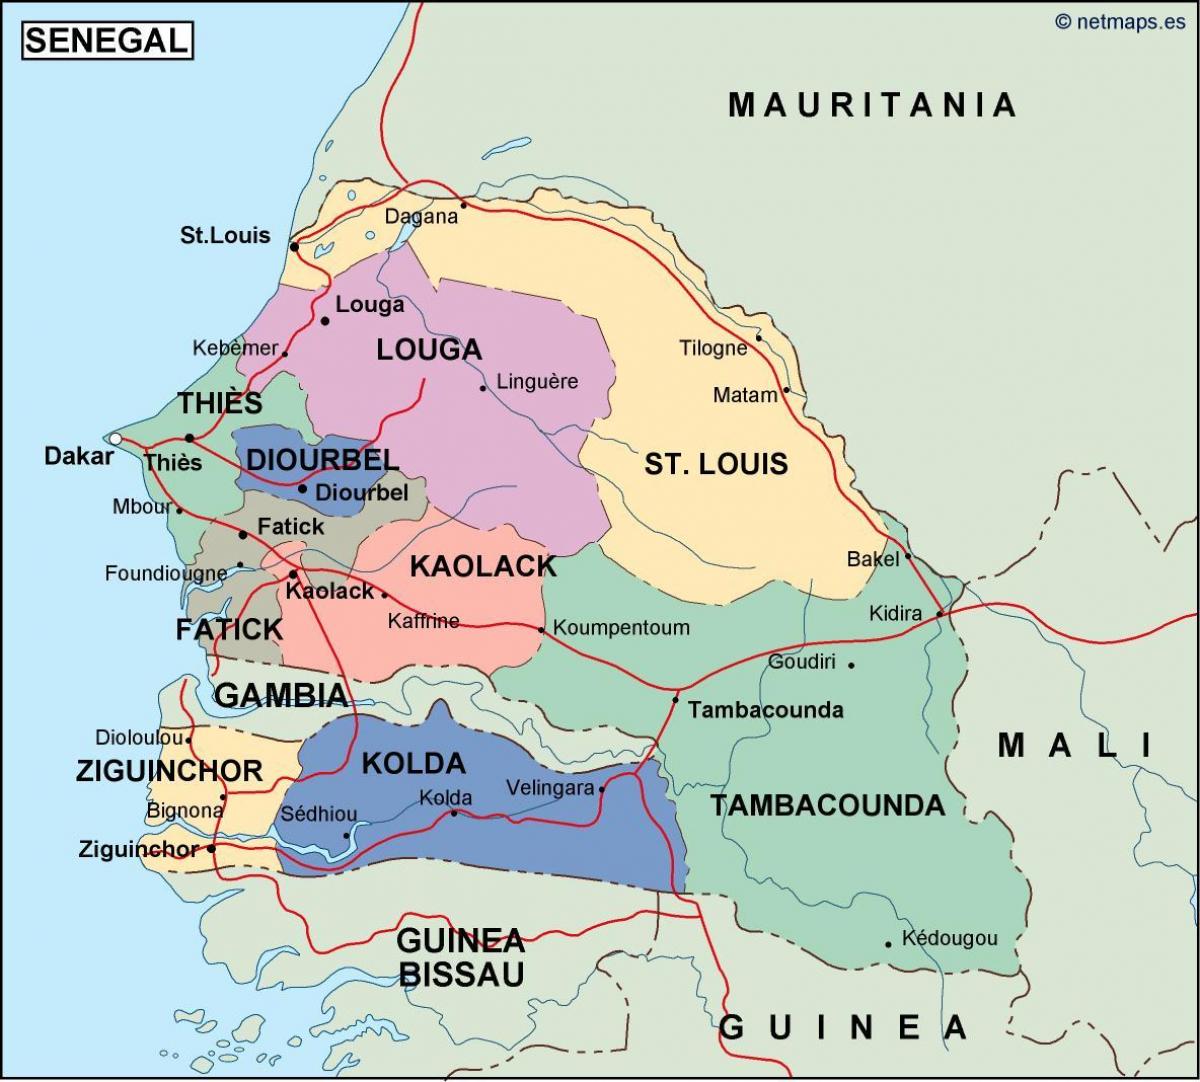 kort over Senegal land